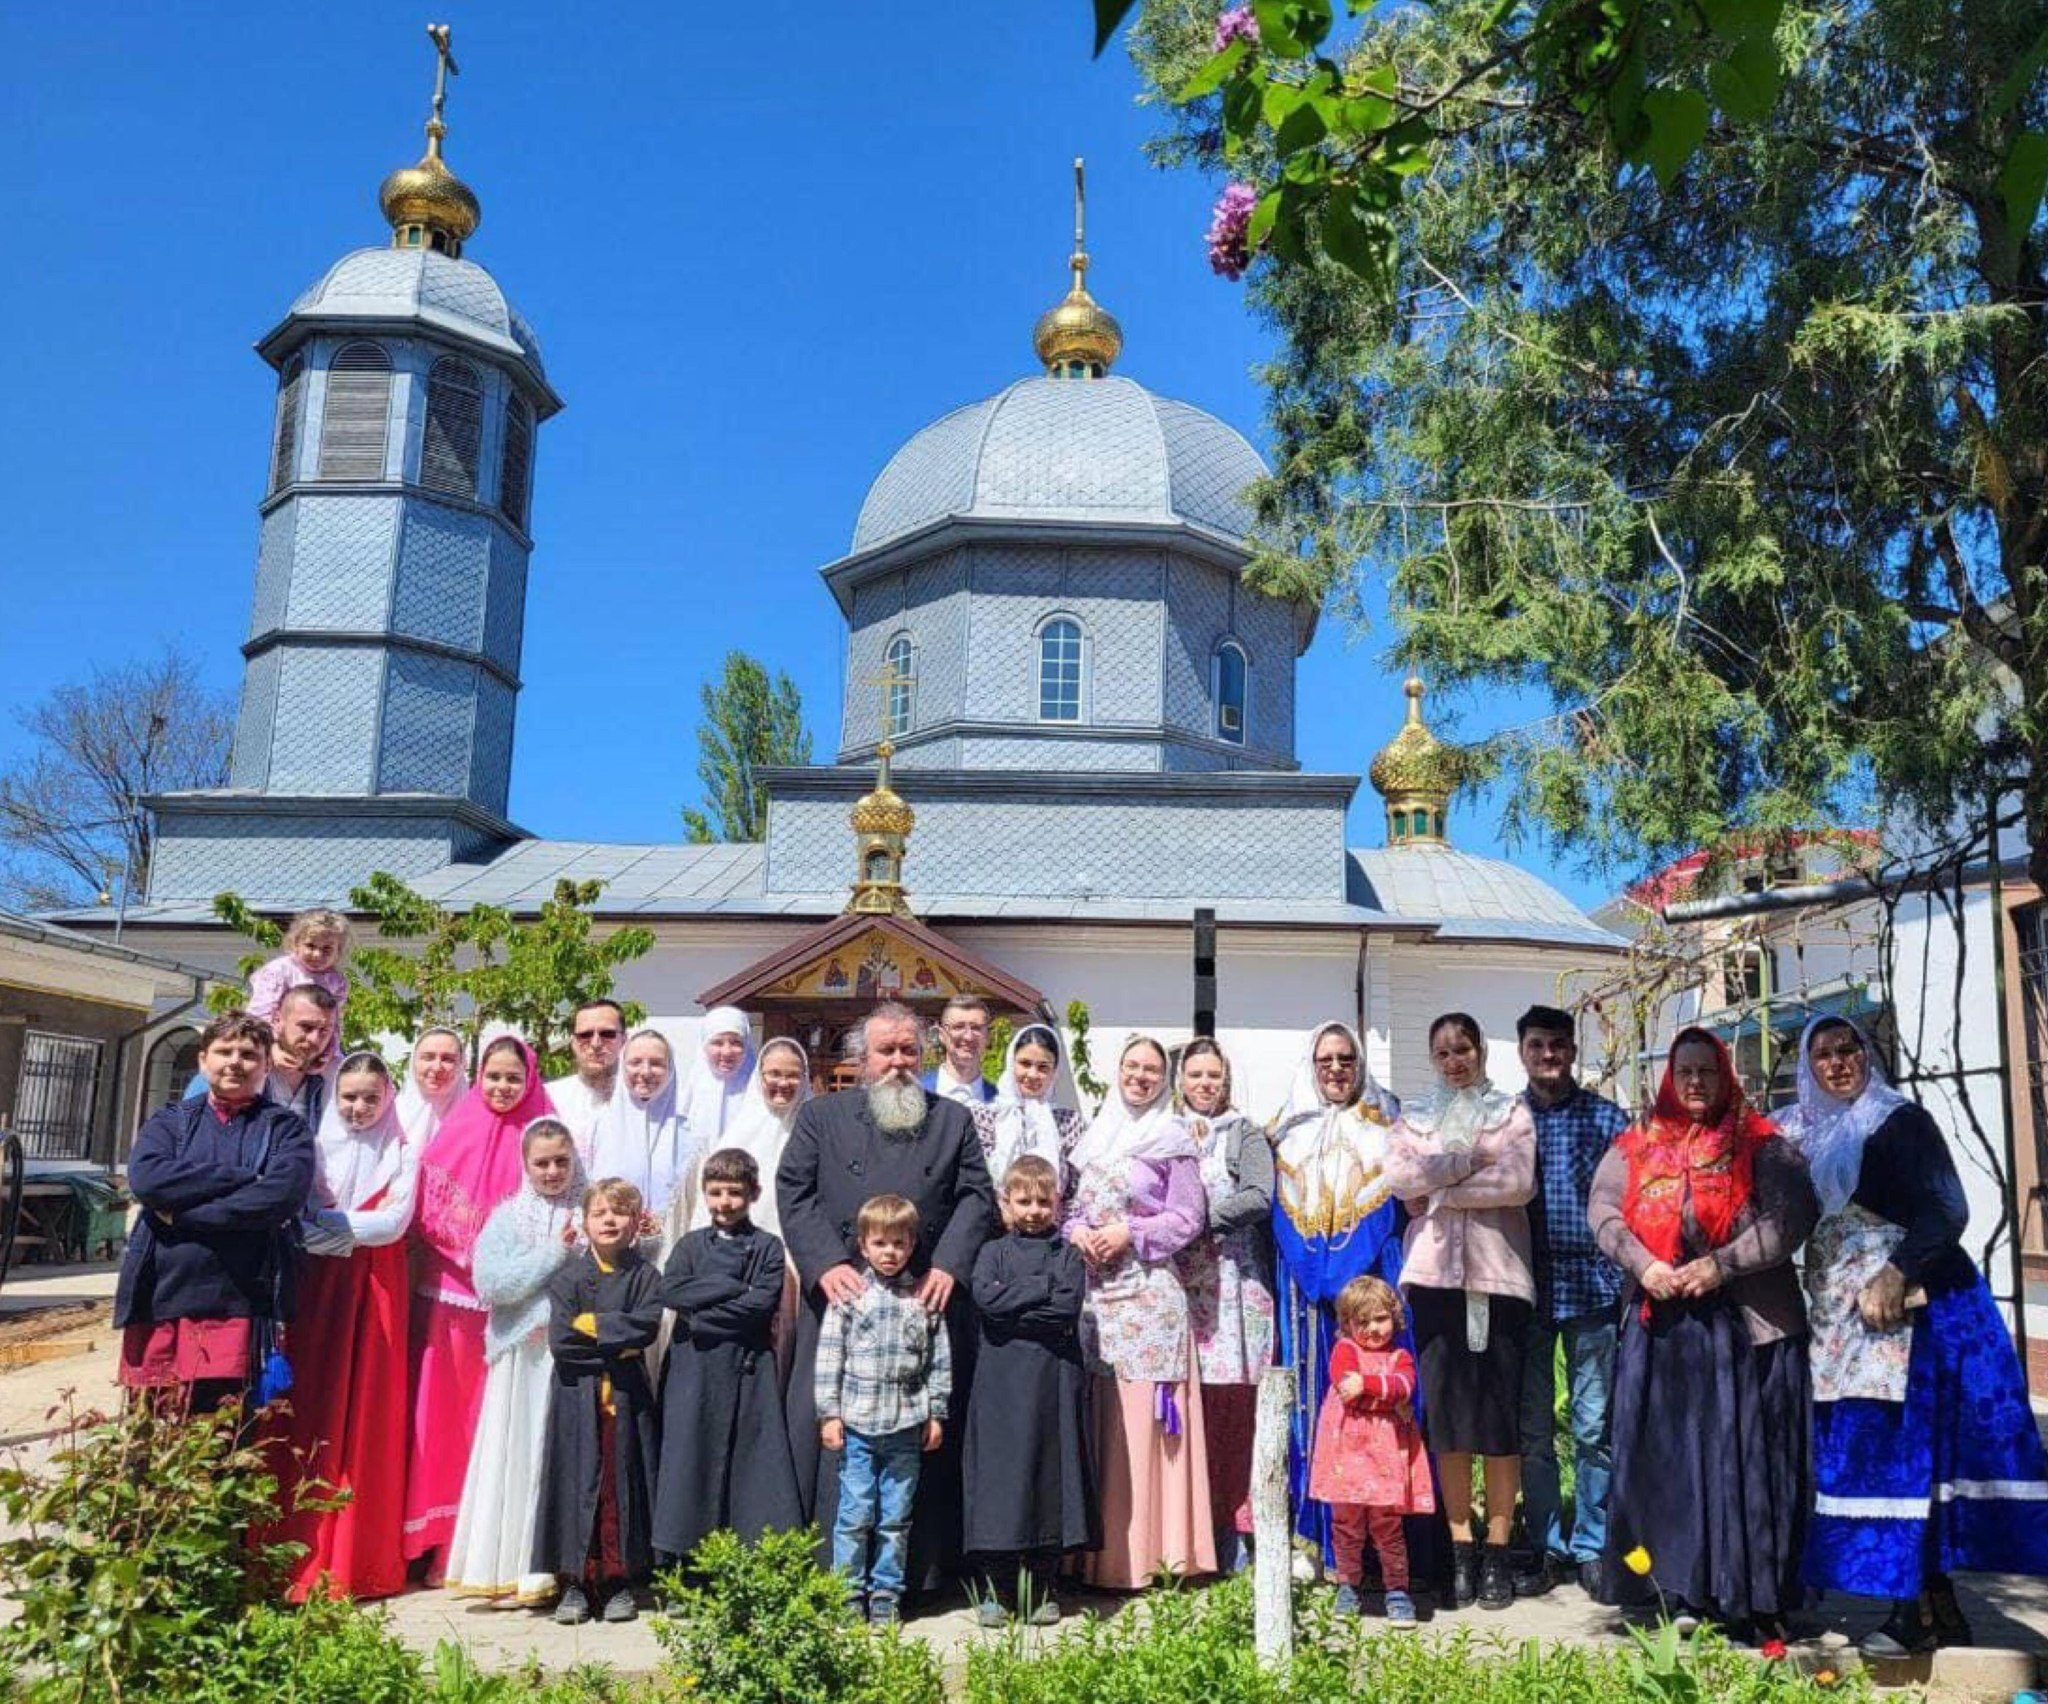 SÄƒrbÄƒtoare Ã®n mica Comunitate a RuÈ™ilor Lipoveni din GalaÈ›i: Â HRAMUL Bisericii ortodoxe de Rit vechi